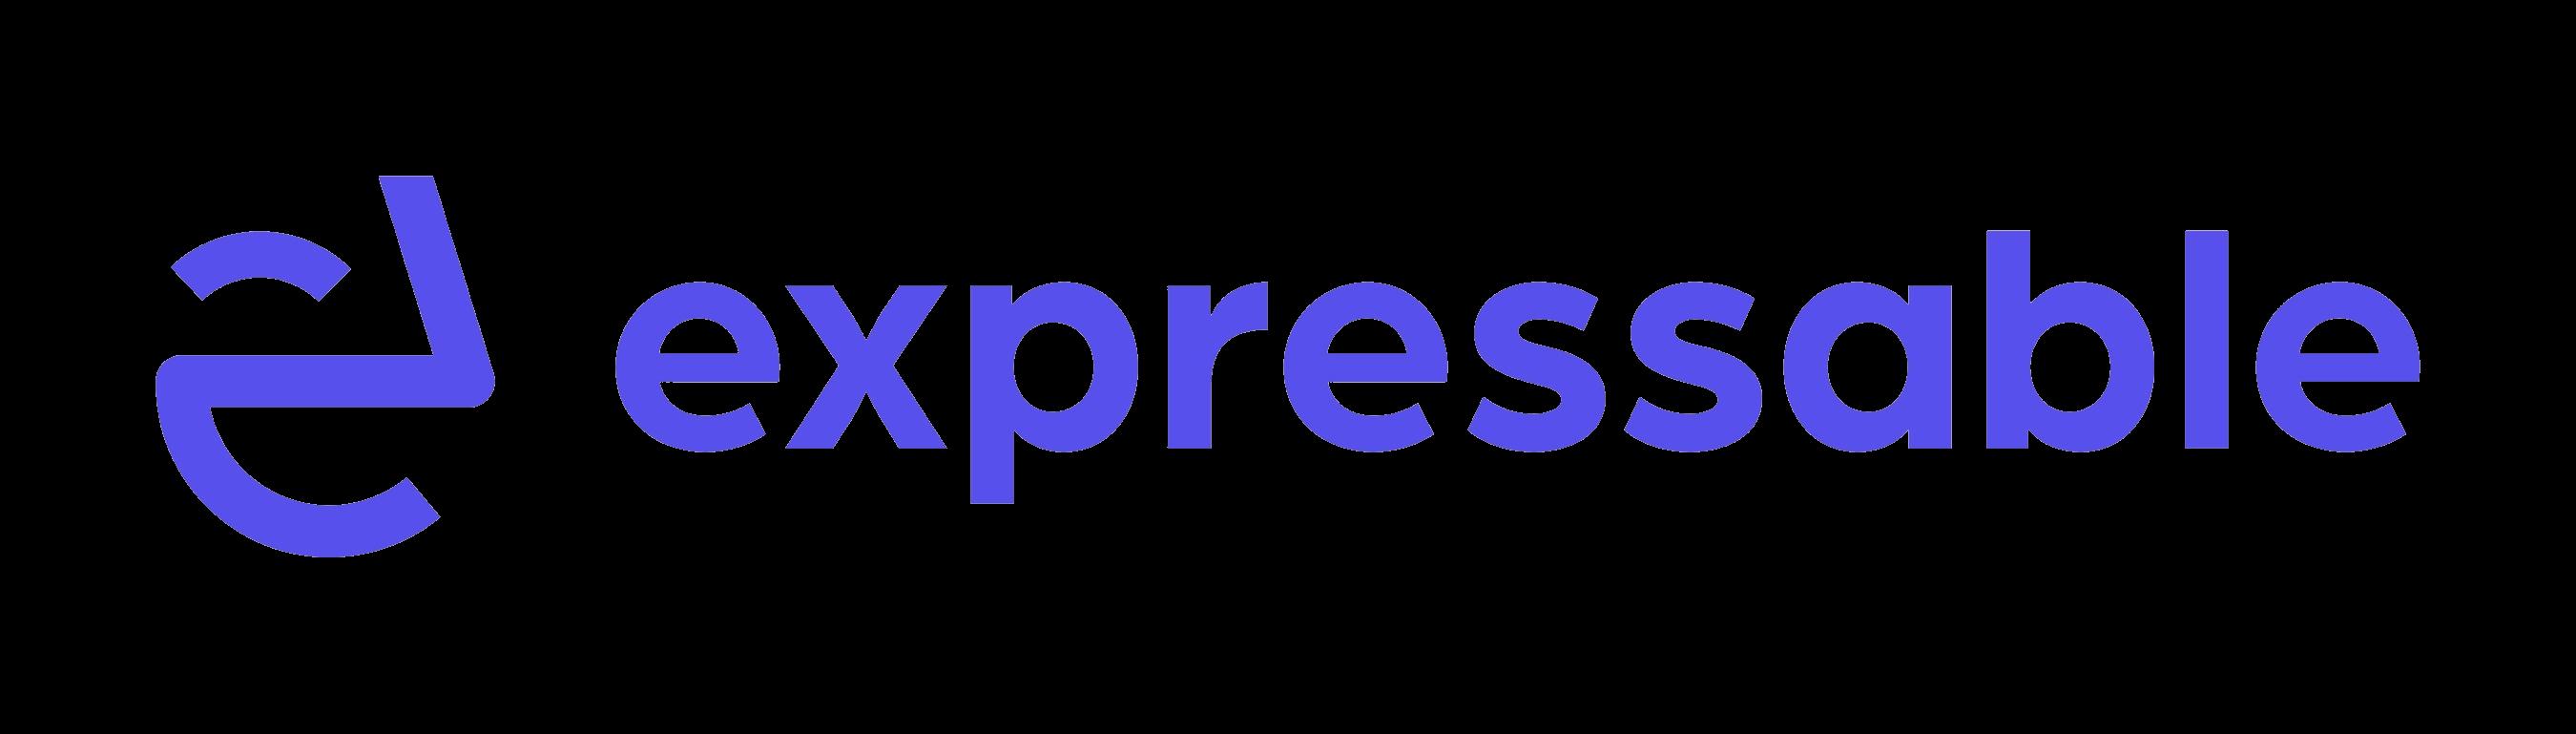 Expressable_logo